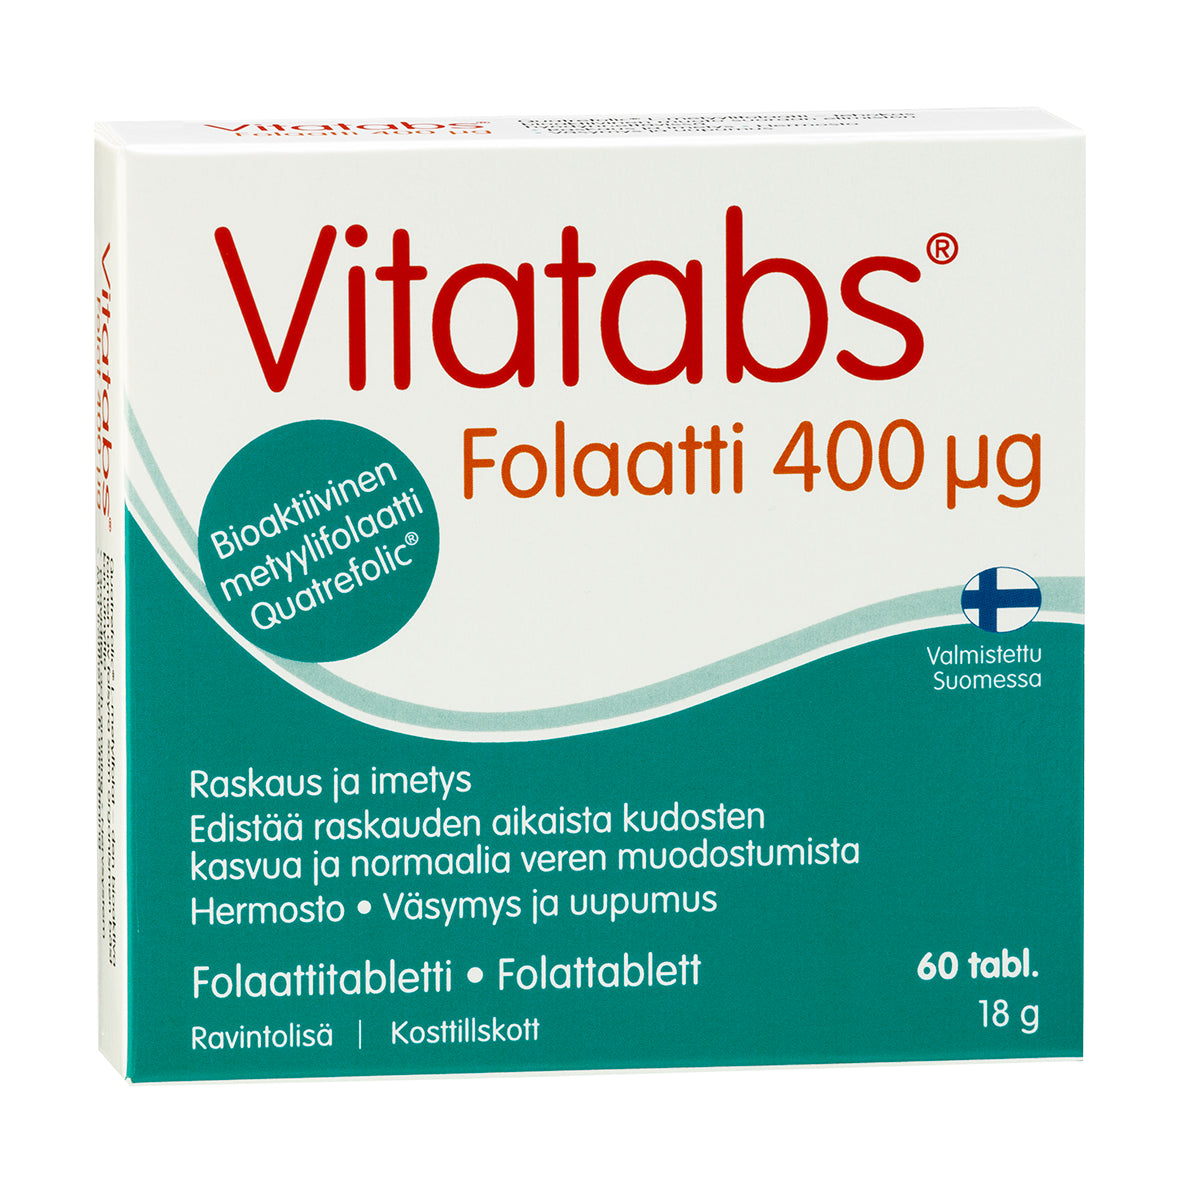 Vitatabs Folaatti-Hankintatukku-Hyvinvoinnin Tavaratalo